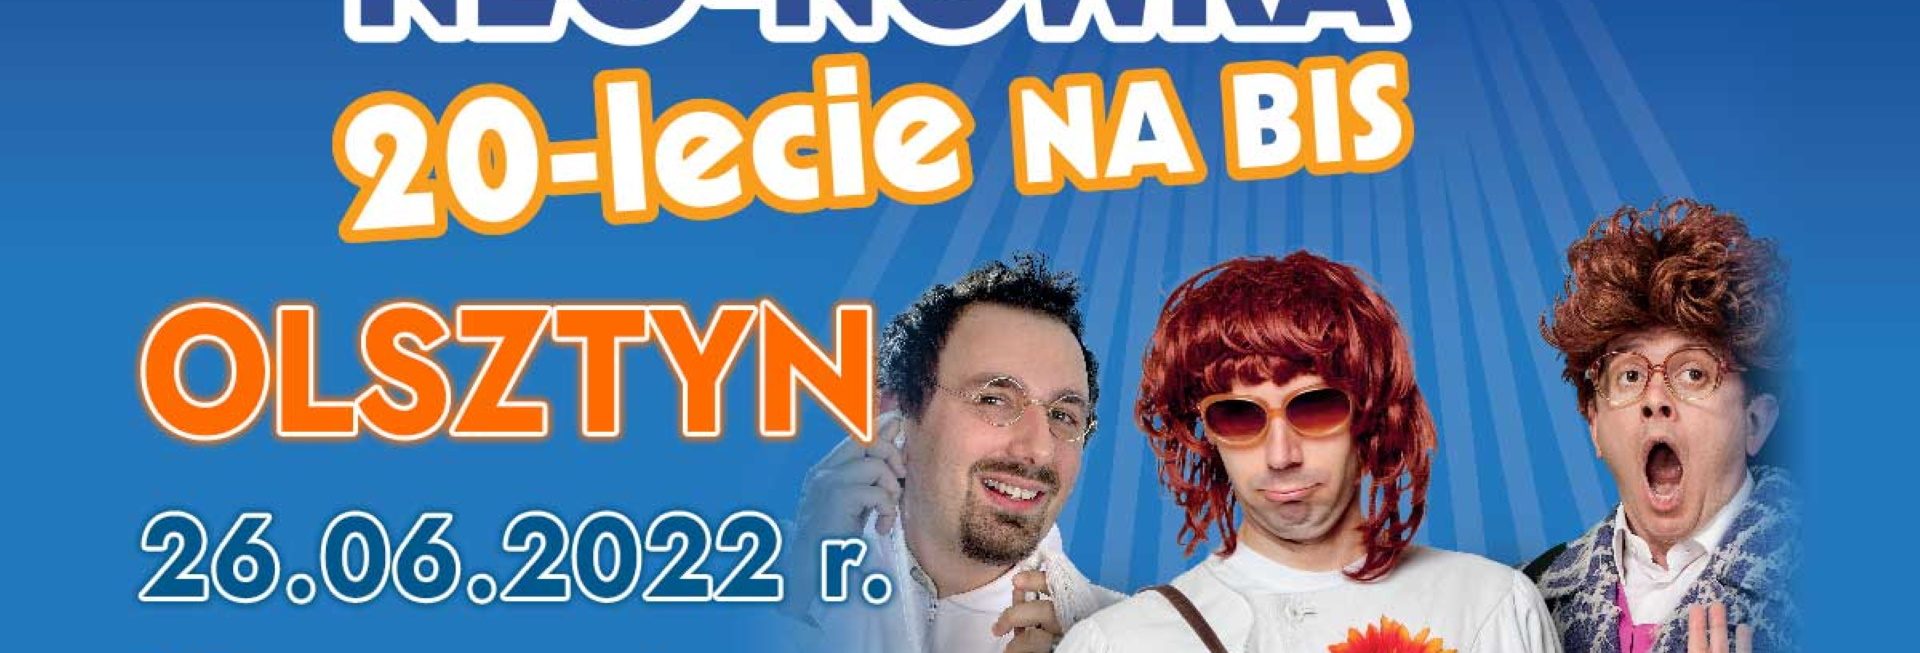 Plakat graficzny zapraszający do Olsztyna na występ Kabaretu Neo-Nówka "20-lecie na BIS" Olsztyn 2022.